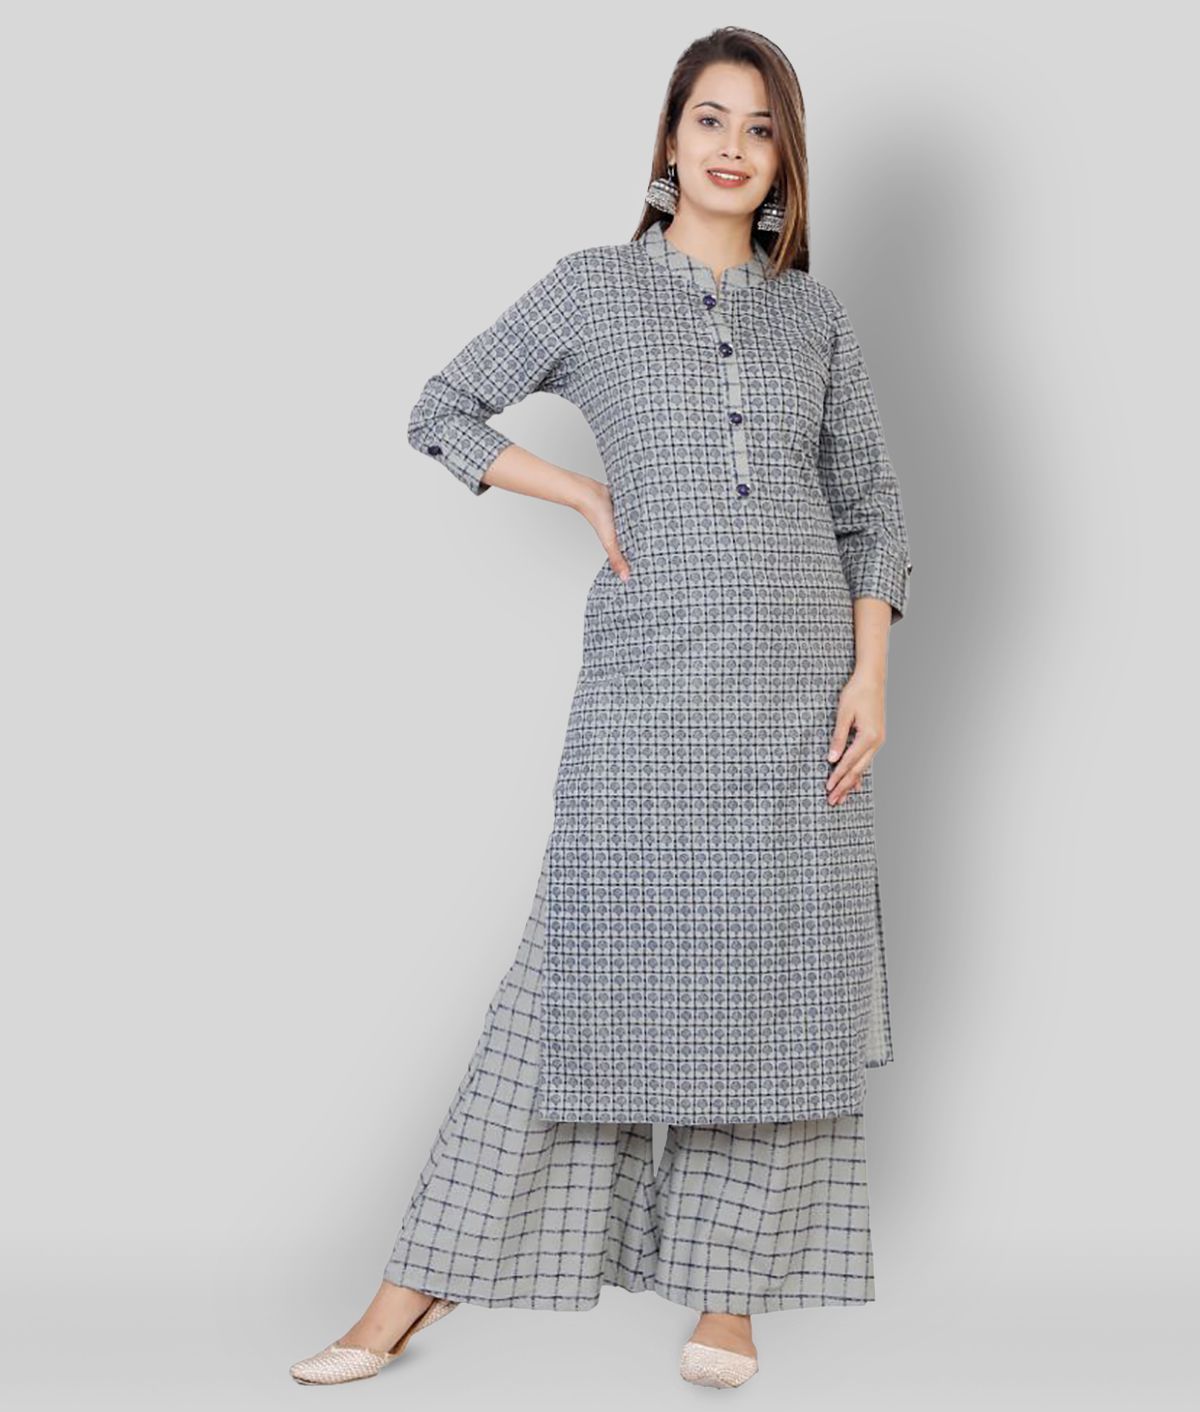     			JC4U - Dark Grey Straight Cotton Women's Stitched Salwar Suit ( Pack of 1 )